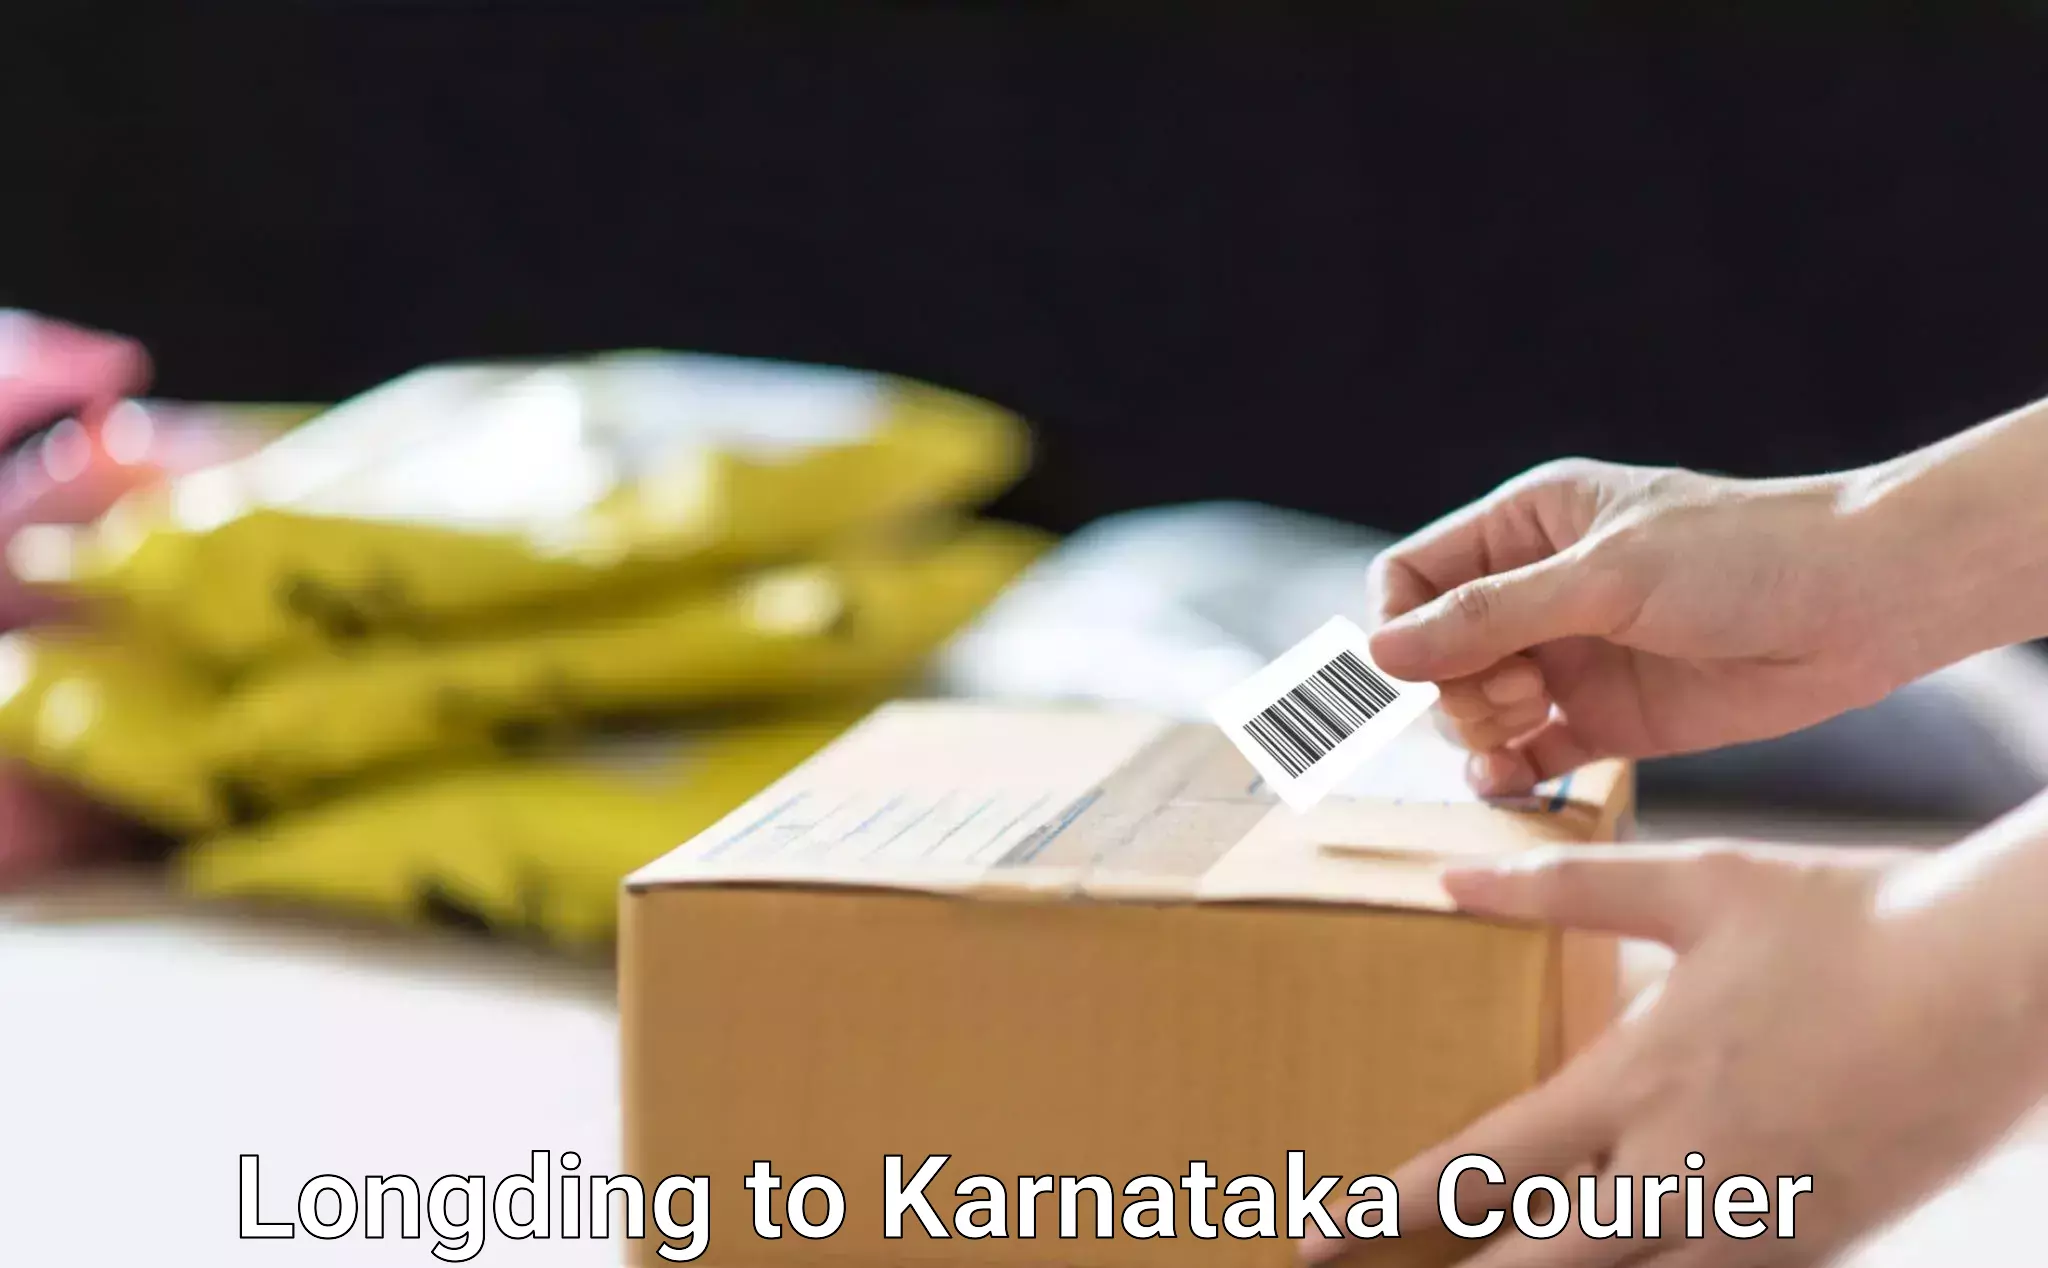 Business logistics support Longding to Karnataka